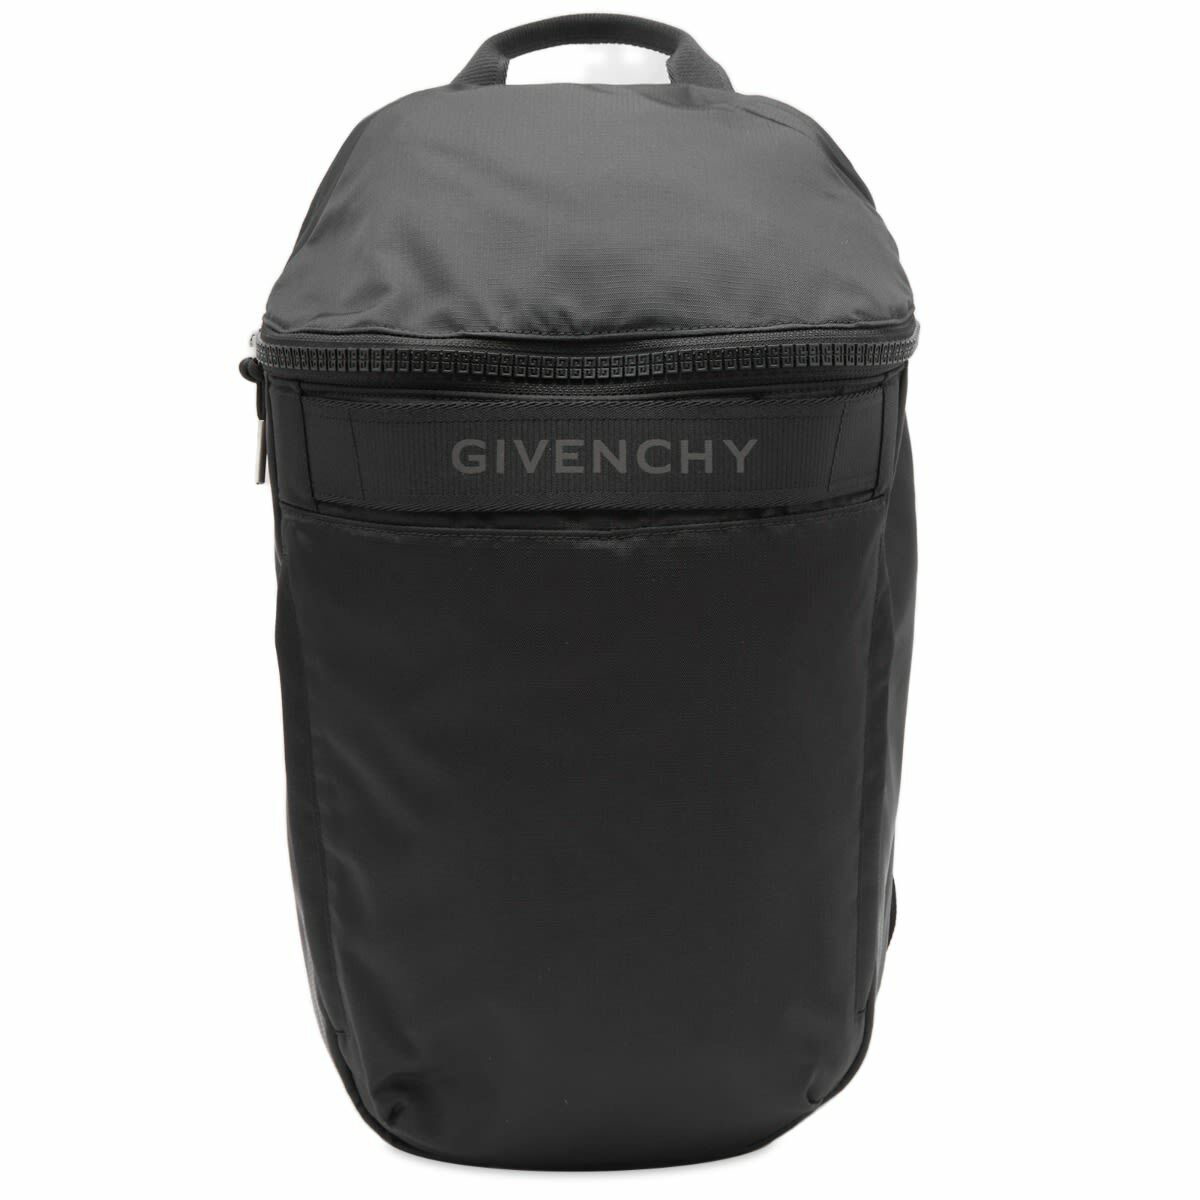 Givenchy Men's G-Trek Backpack in Black Givenchy